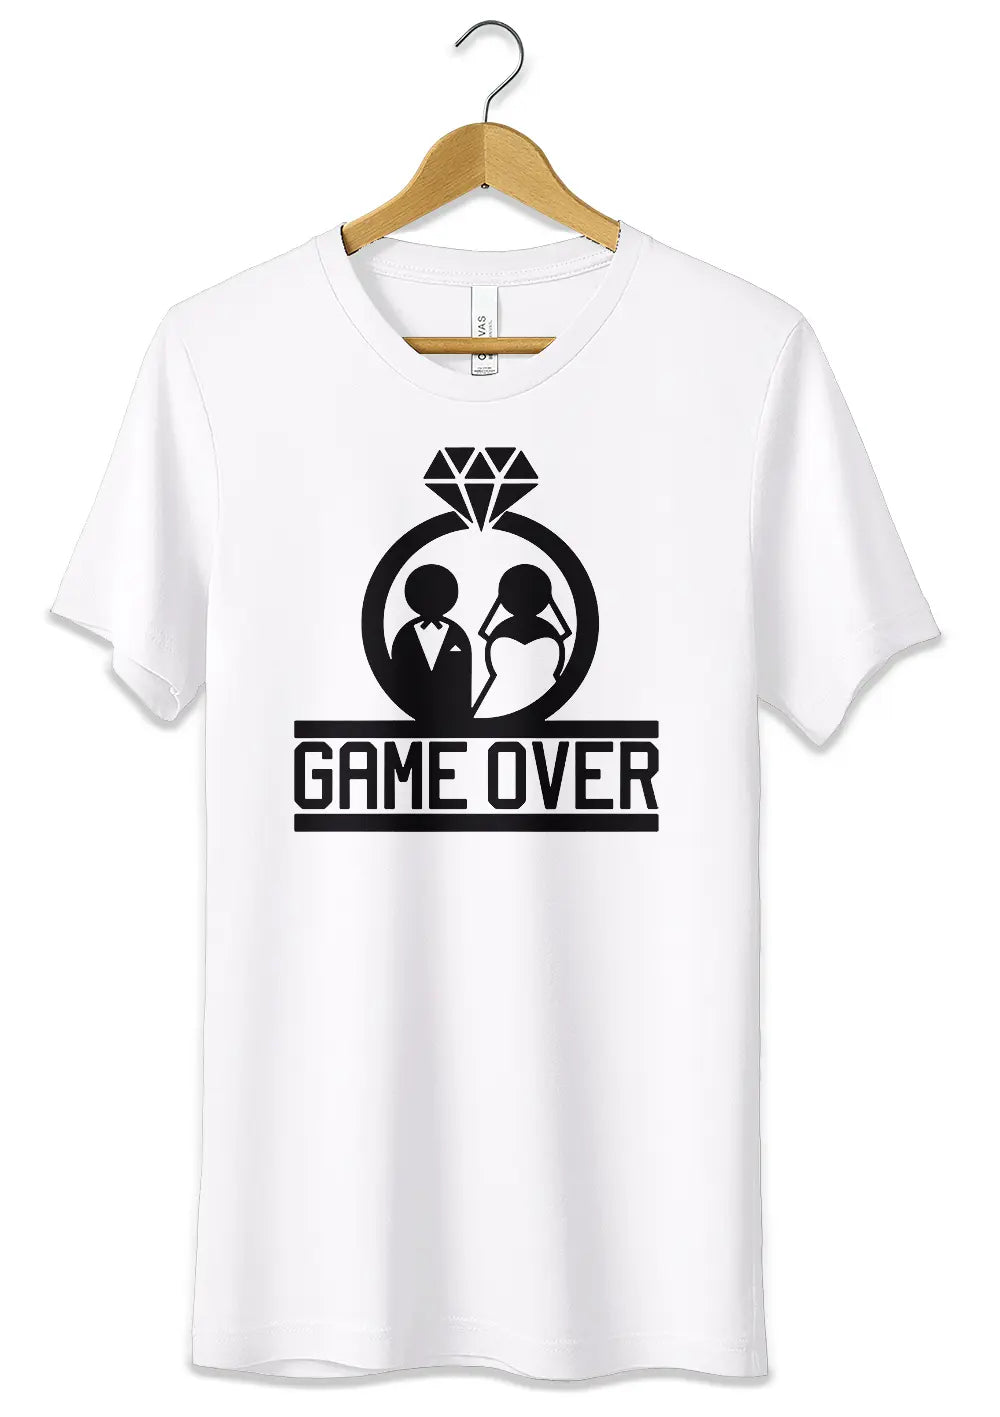 T-Shirt Maglietta per Addio al Celibato Nubilato in Cotone Personalizzata Game Over T-Shirt CmrDesignStore XS Bianco 